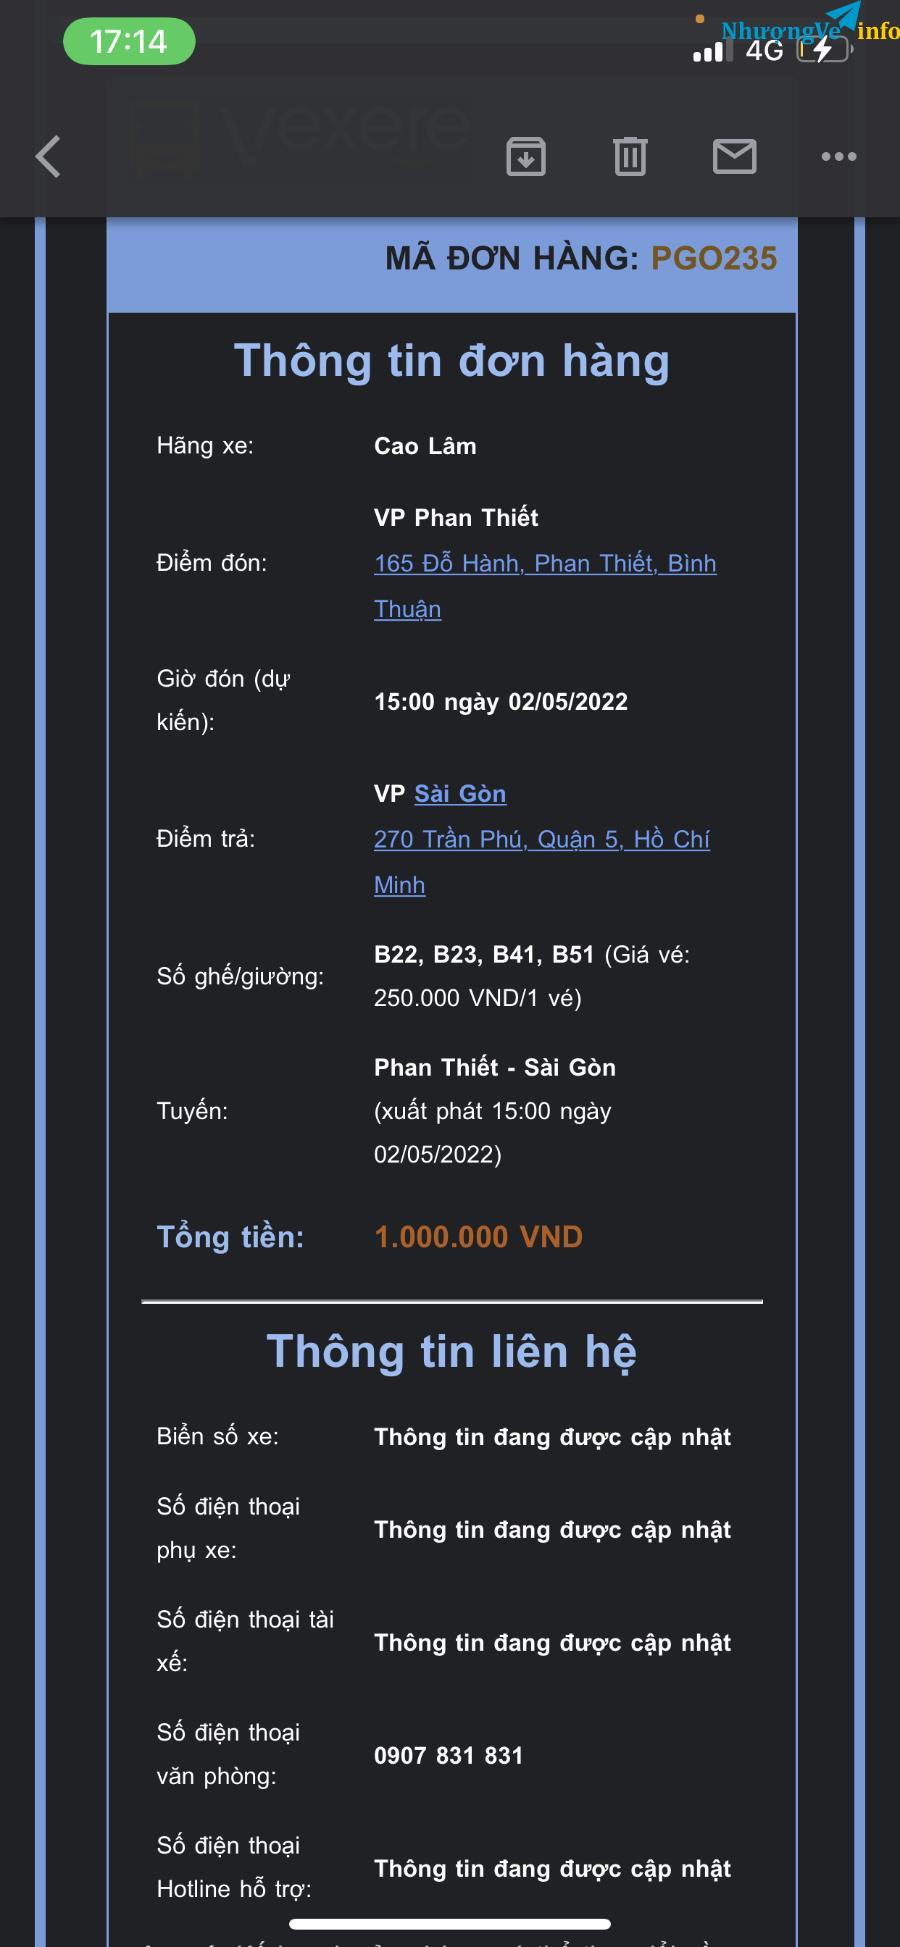 Ảnh Nhượng vé Bình Thuận đi Sài Gòn 15h 2/5 (đổi lịch miễn phí)